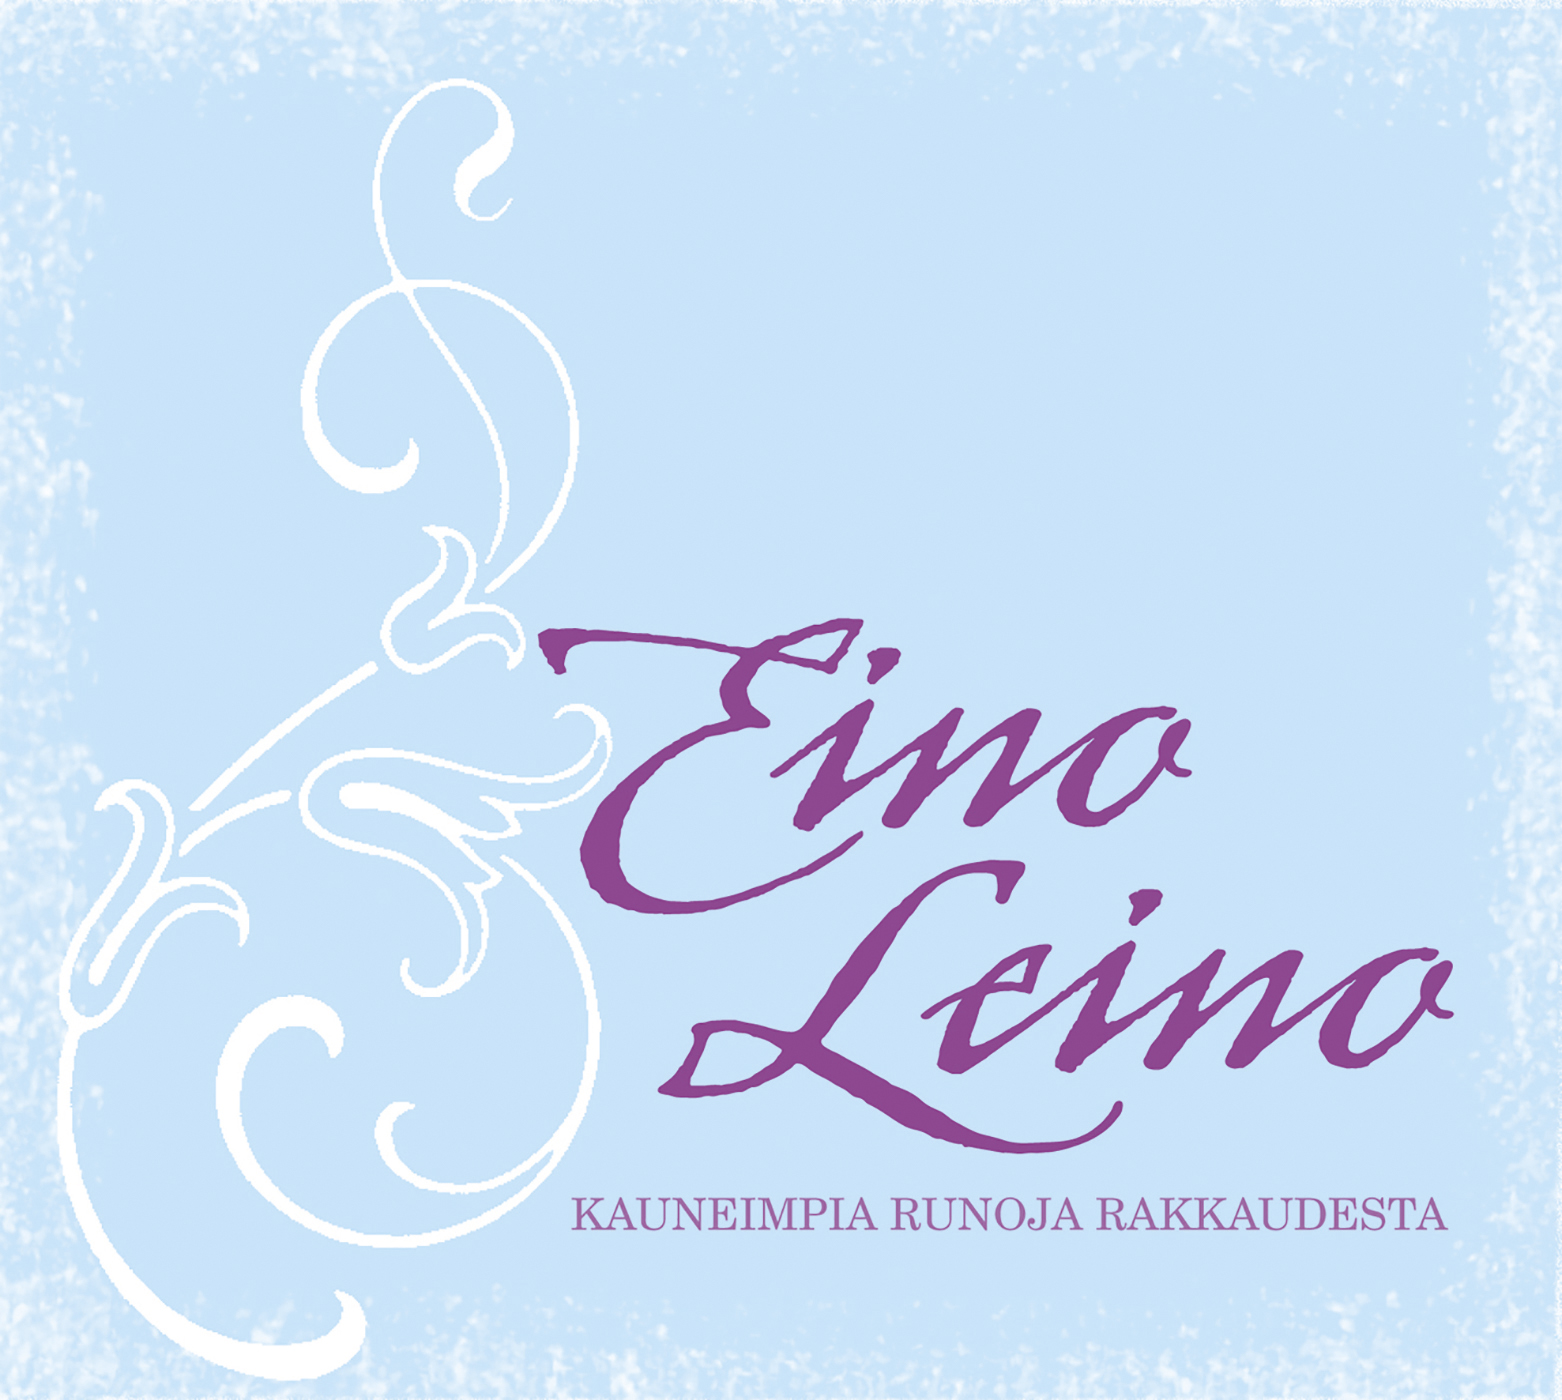 Leino, Eino - Kauneimpia runoja rakkaudesta, äänikirja